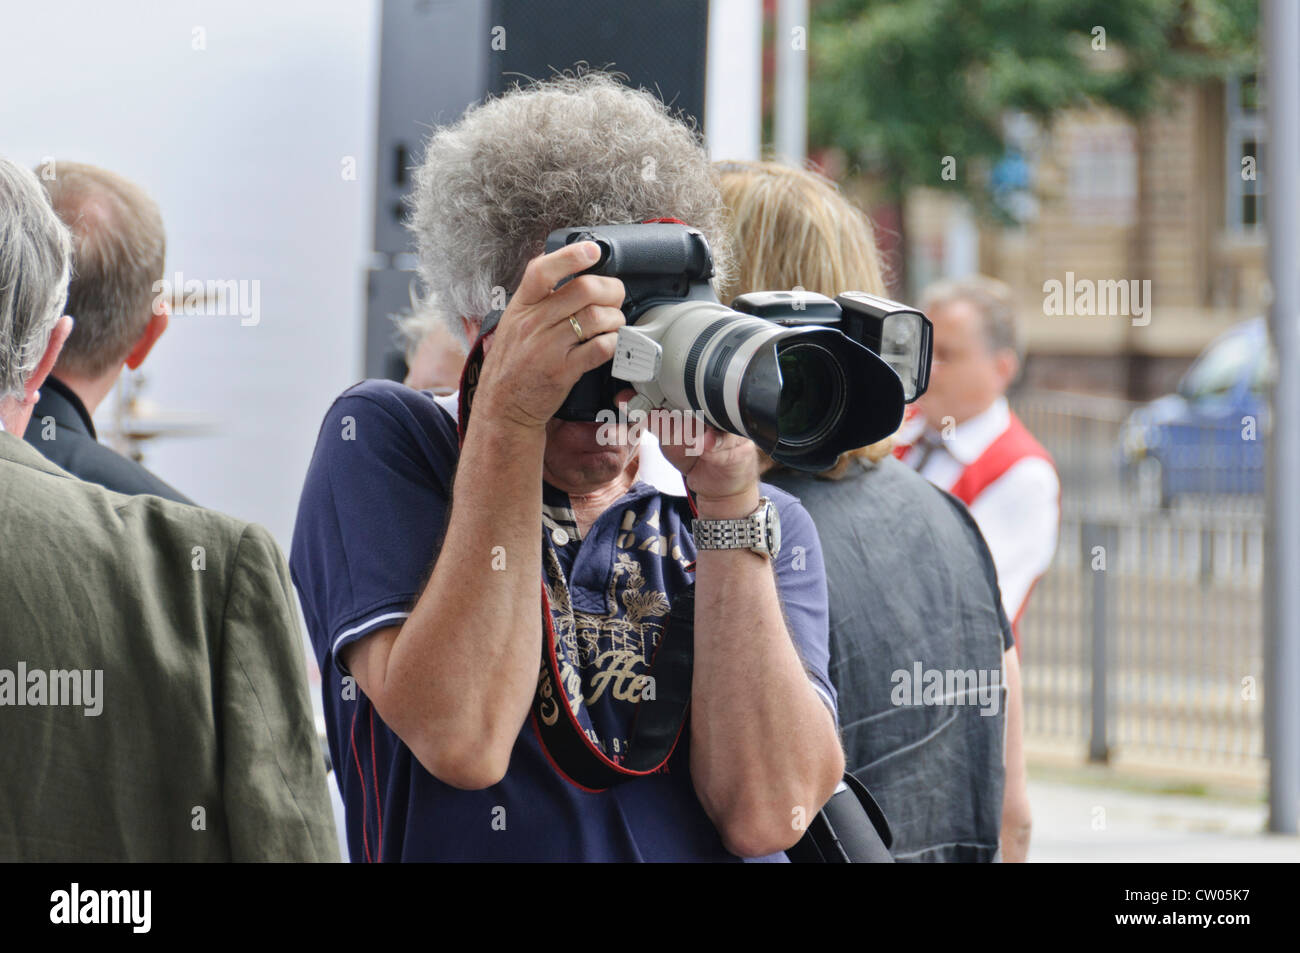 El adulto maduro hombre caucásico con gris pelo rizado, macho profesional fotógrafo, tomando fotos con una cámara DSLR de fotograma completo de Canon Foto de stock